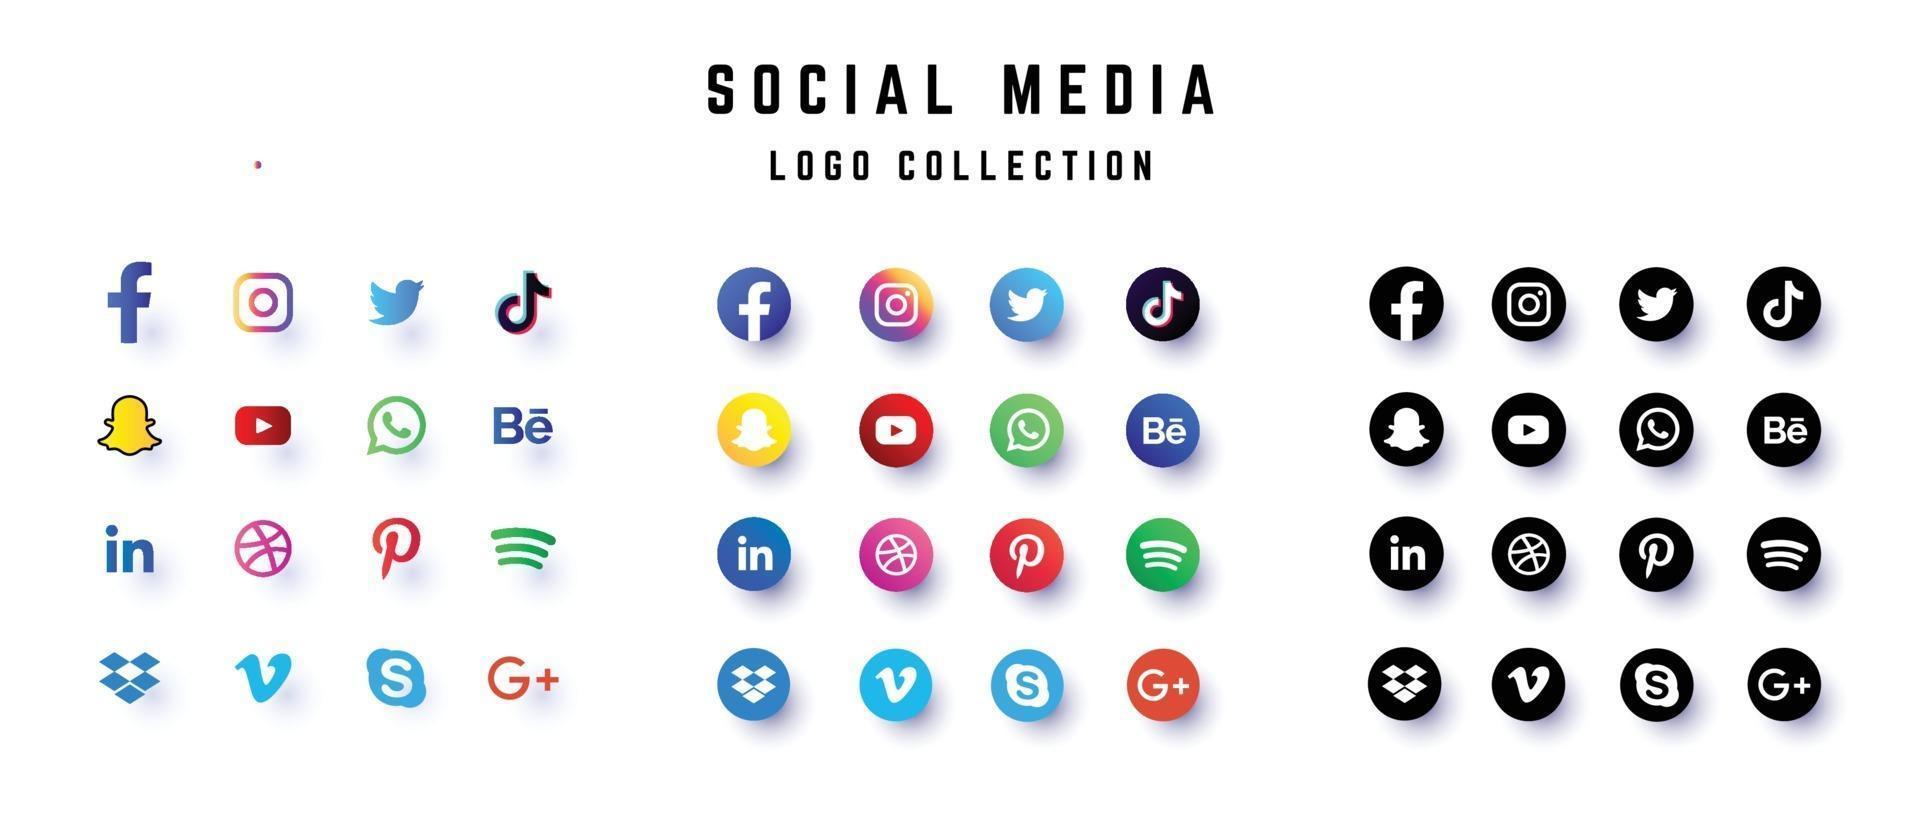 social media logo set collection vector